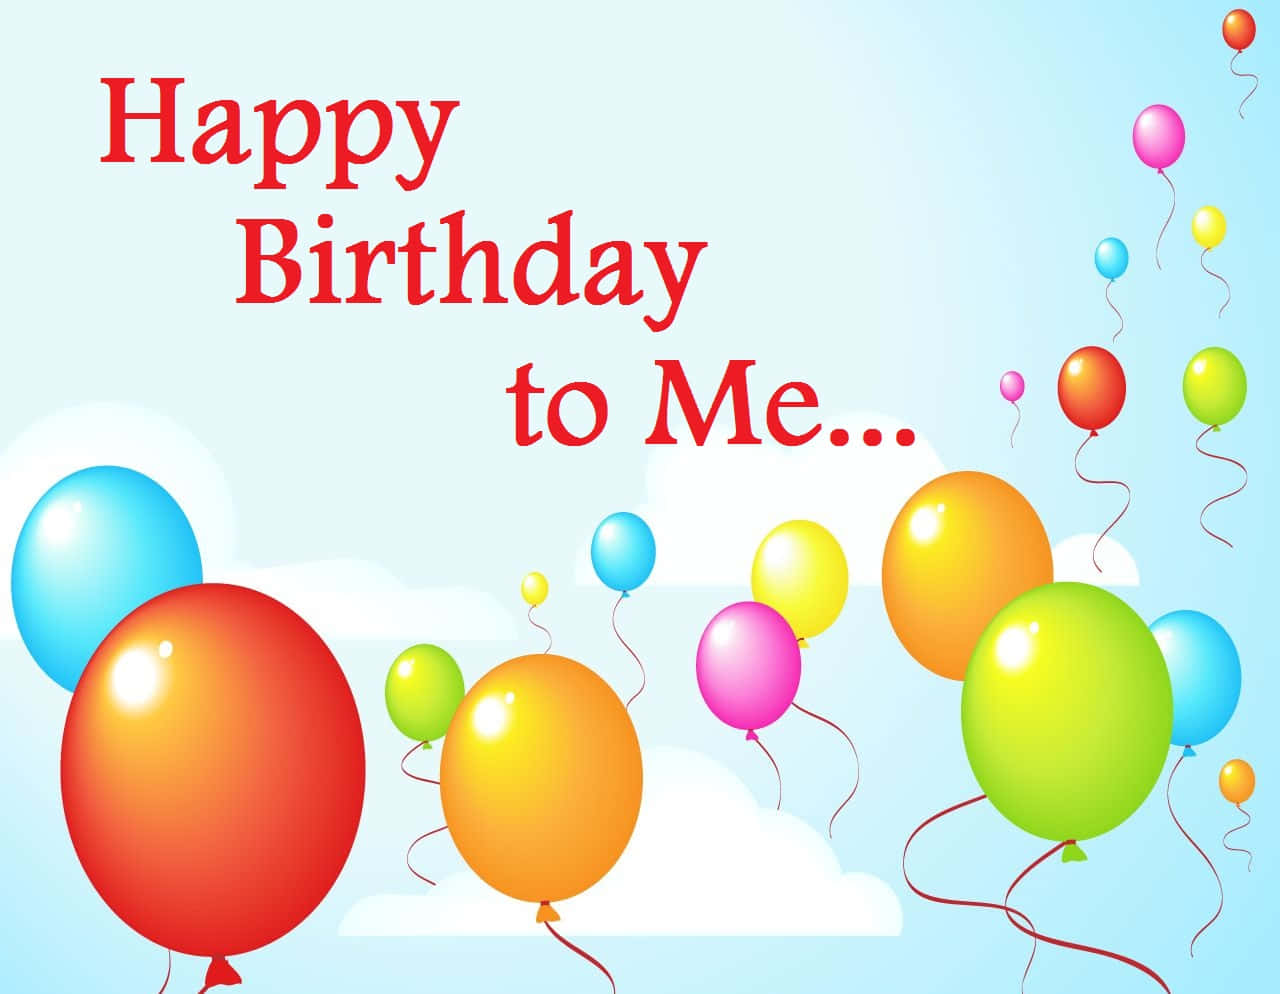 Heuteist Ein Tag Der Feier. Es Ist Mein Geburtstag Und Ich Fühle Mich Großartig.